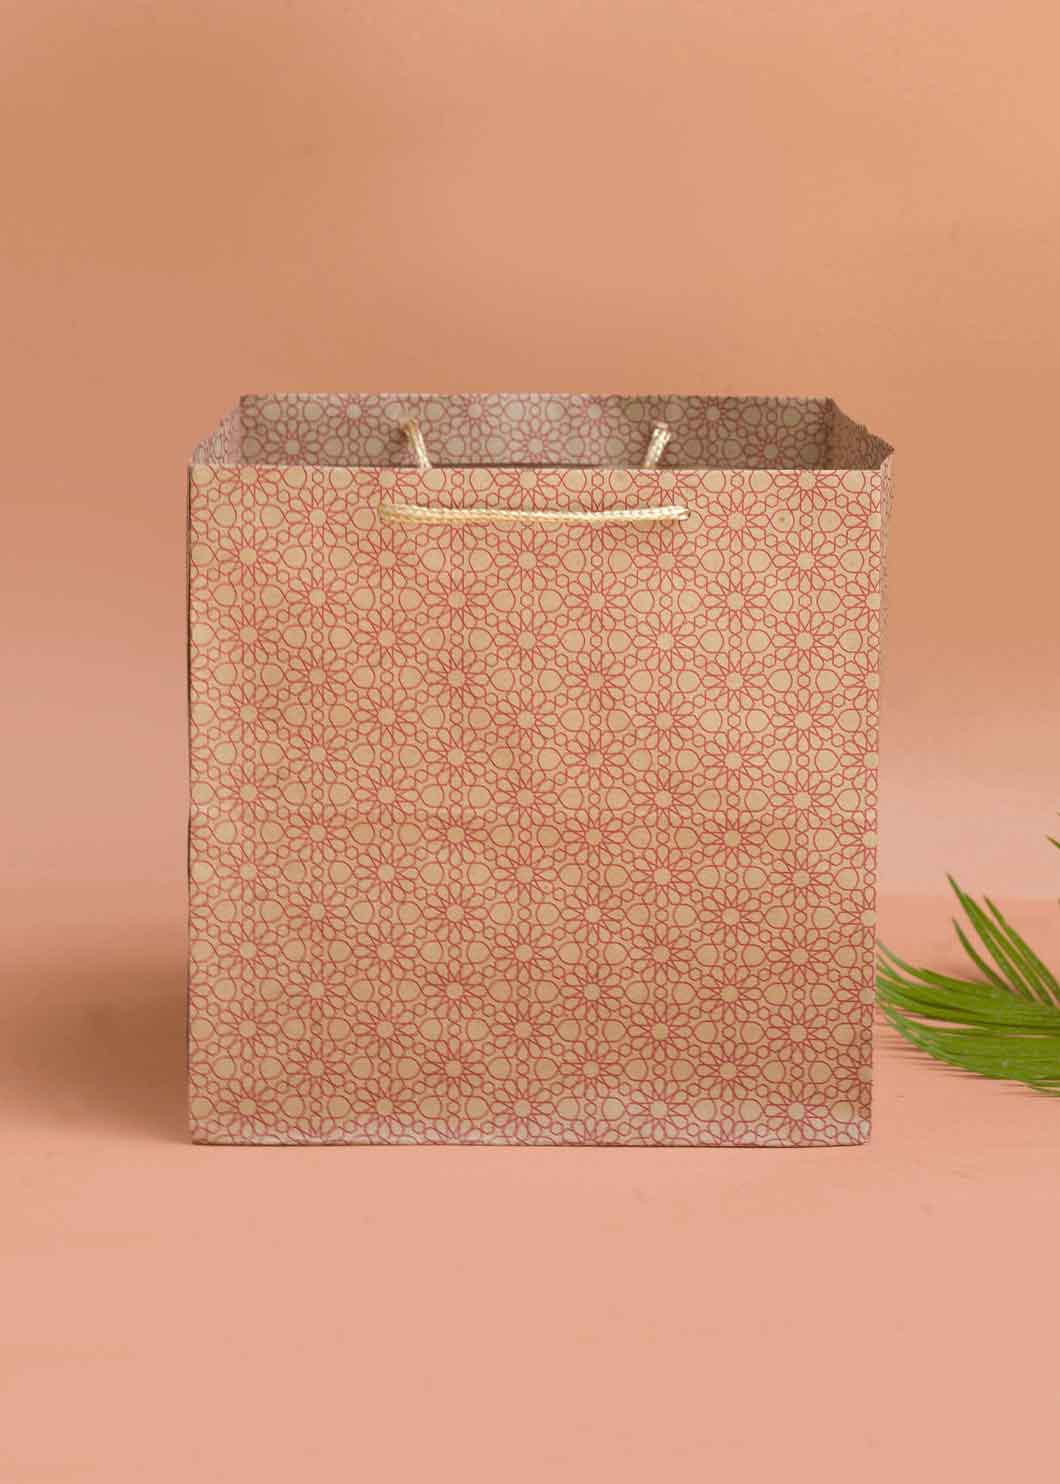 Craft Paper Bag - Floral Pattern Design Square Paper Bag For Multupupose Packaging